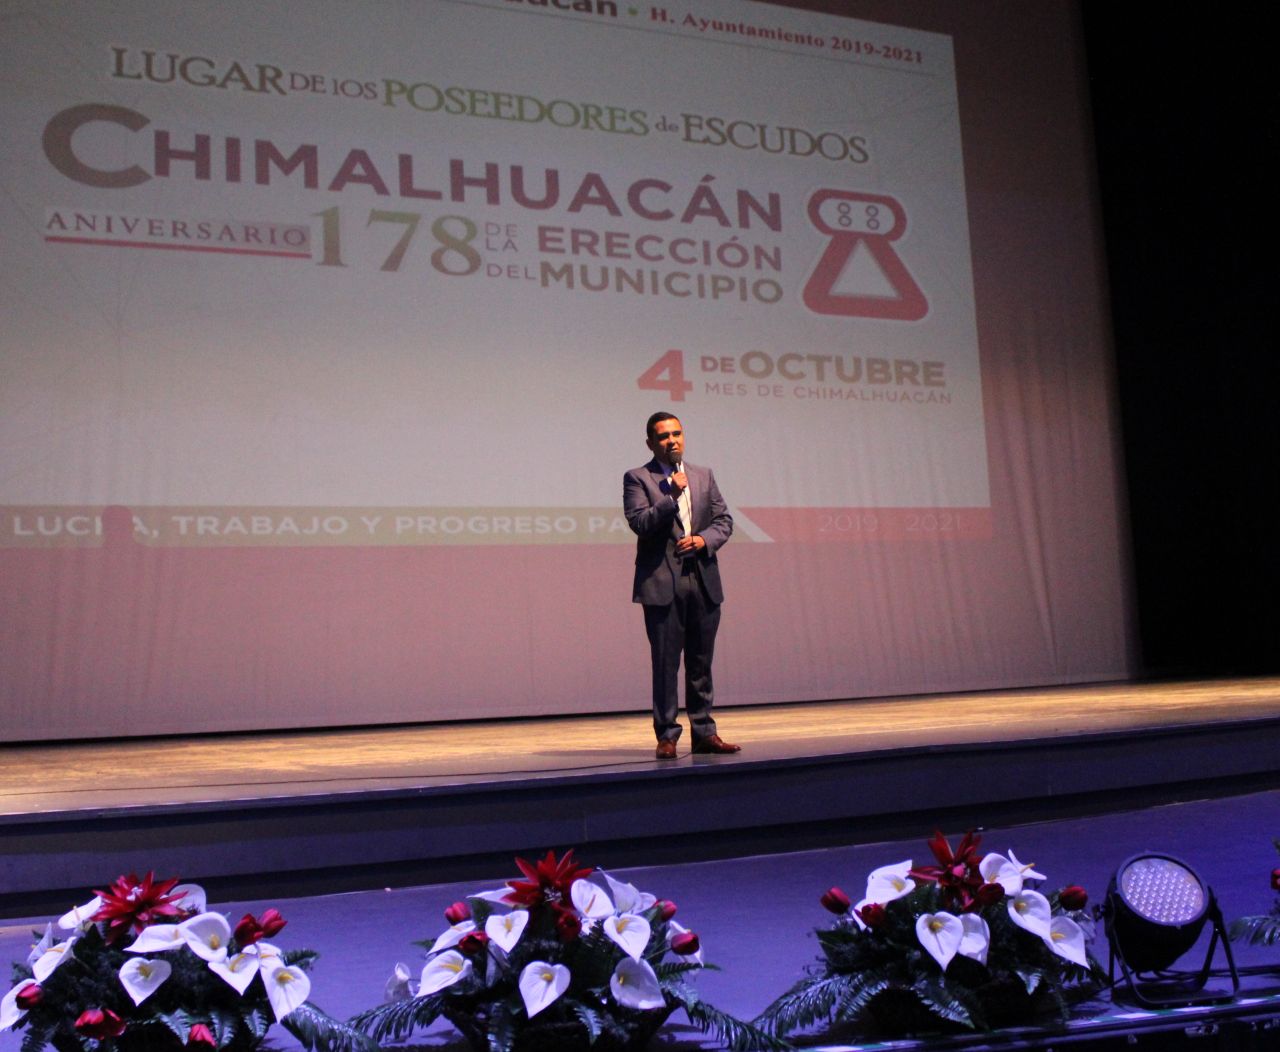 Celebremos 178 aniversario de la erección de Chimalhuacán como municipio